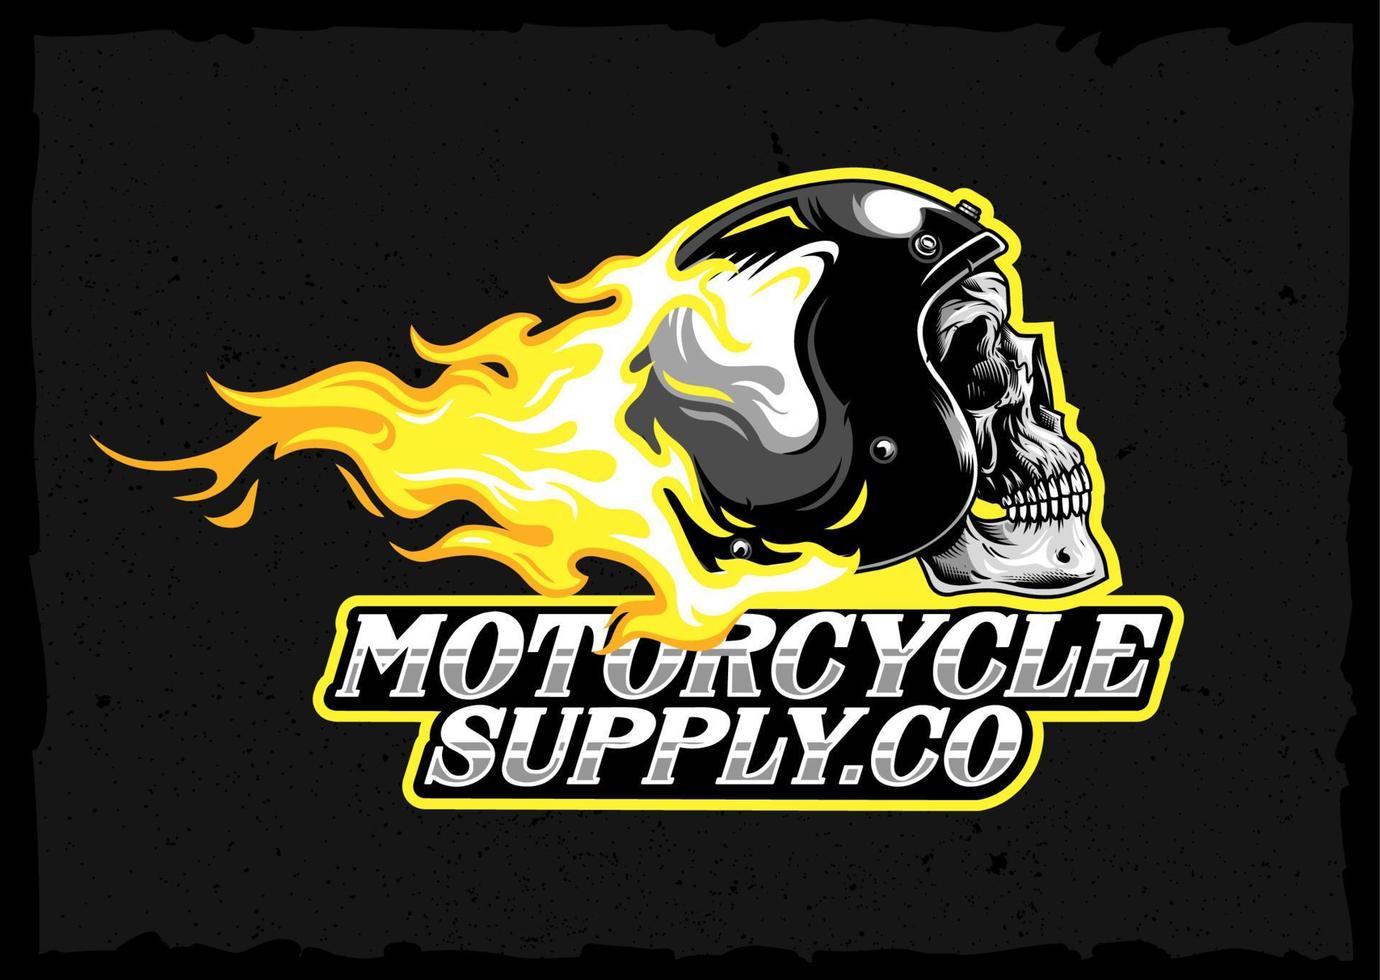 Clásico ardiente cráneo casco emblema. clásico motocicleta diseño logo Insignia vector